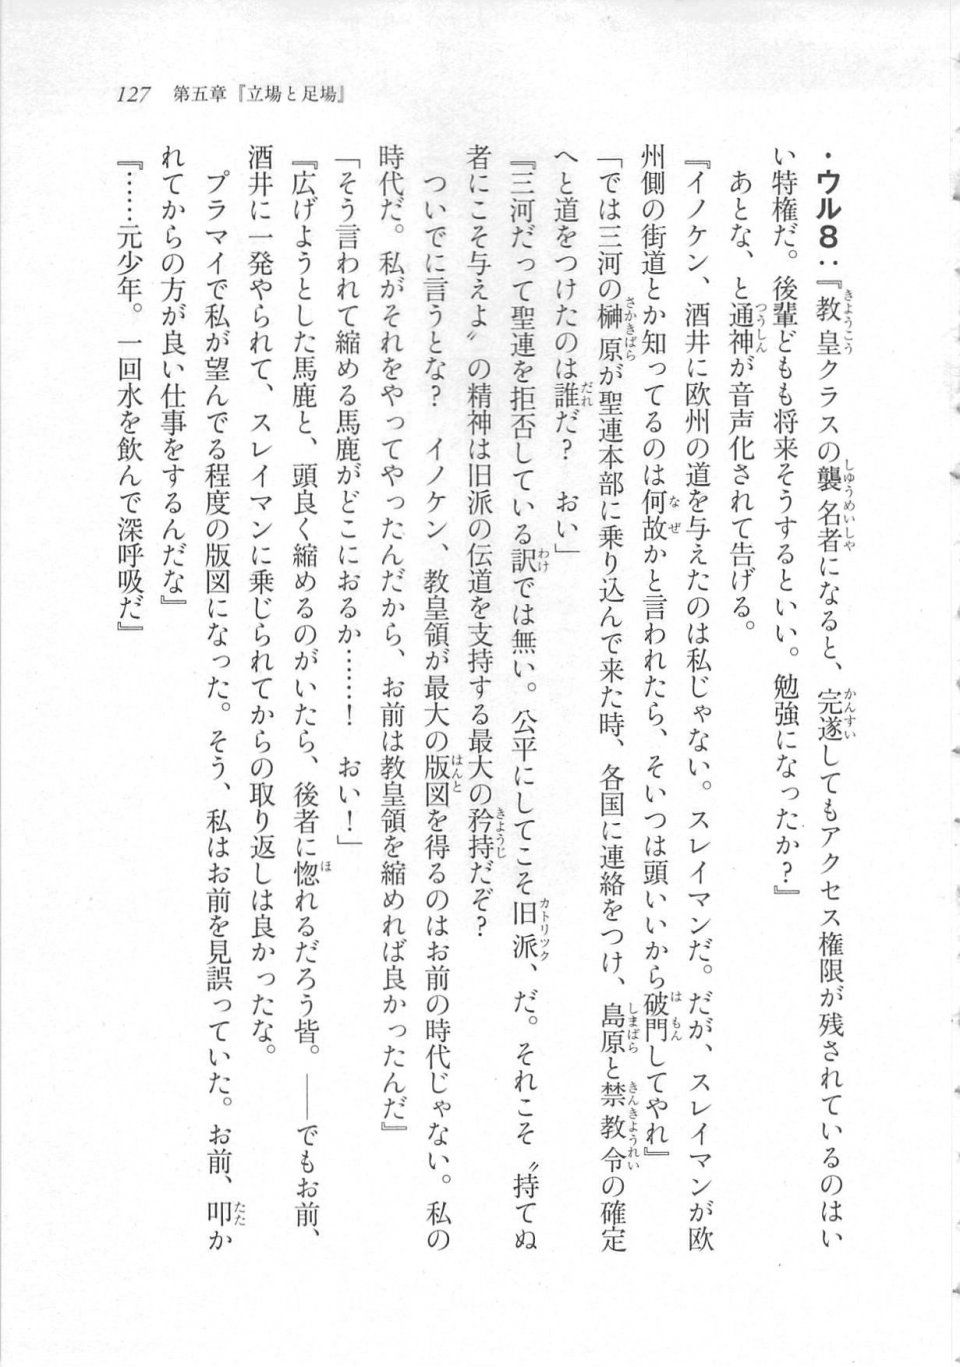 Kyoukai Senjou no Horizon LN Sidestory Vol 3 - Photo #131